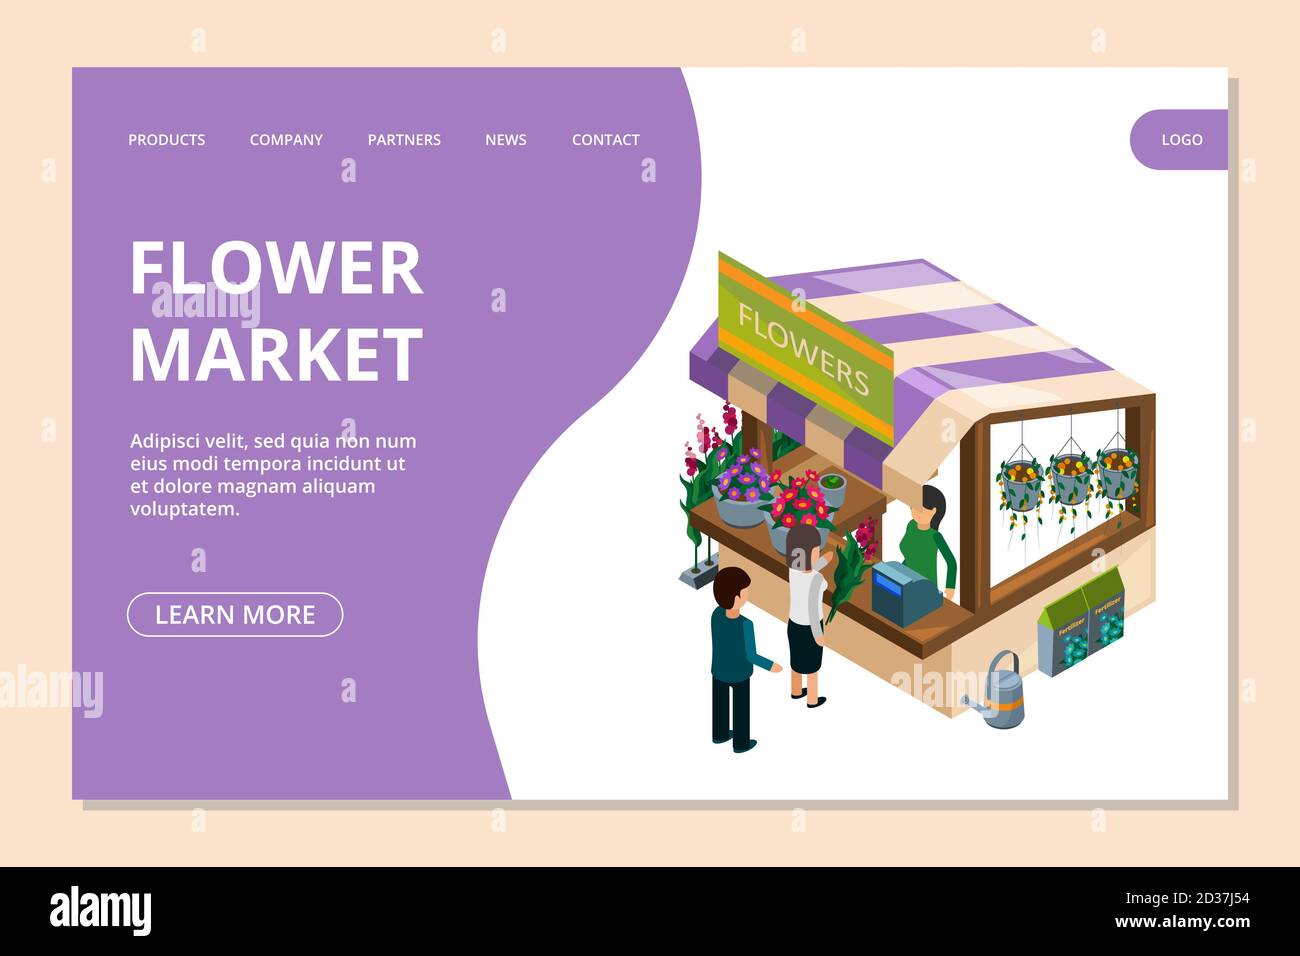 Modèle de page d'arrivée Flower Market. Fleurs isométriques, comptoir, illustrations vectorielles de personnes Illustration de Vecteur